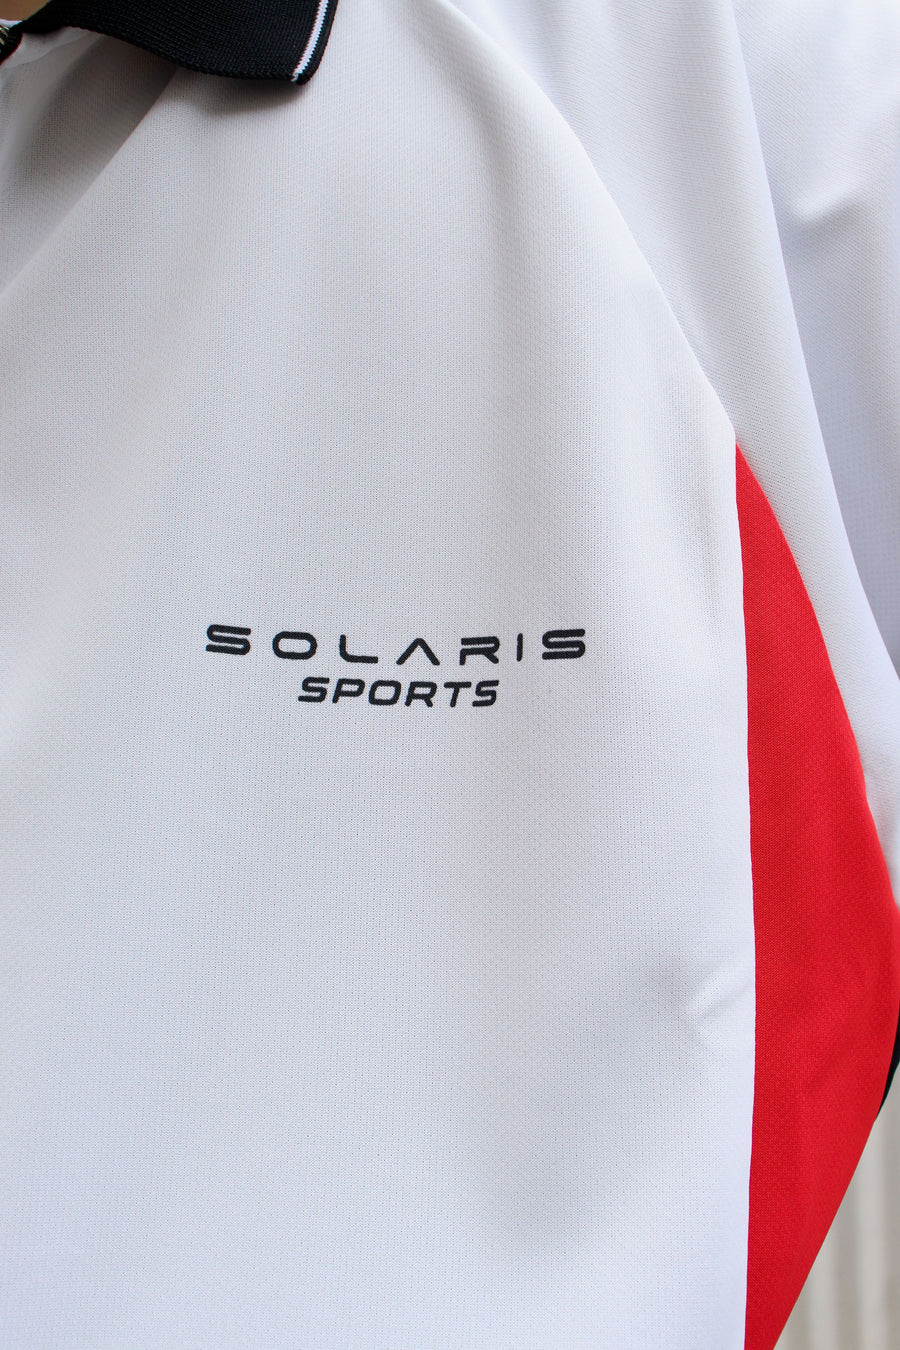 SOLARIS SPORTS(ソラリススポーツ)のL/S FOOTBALL SHIRT(シャツ)の通販 